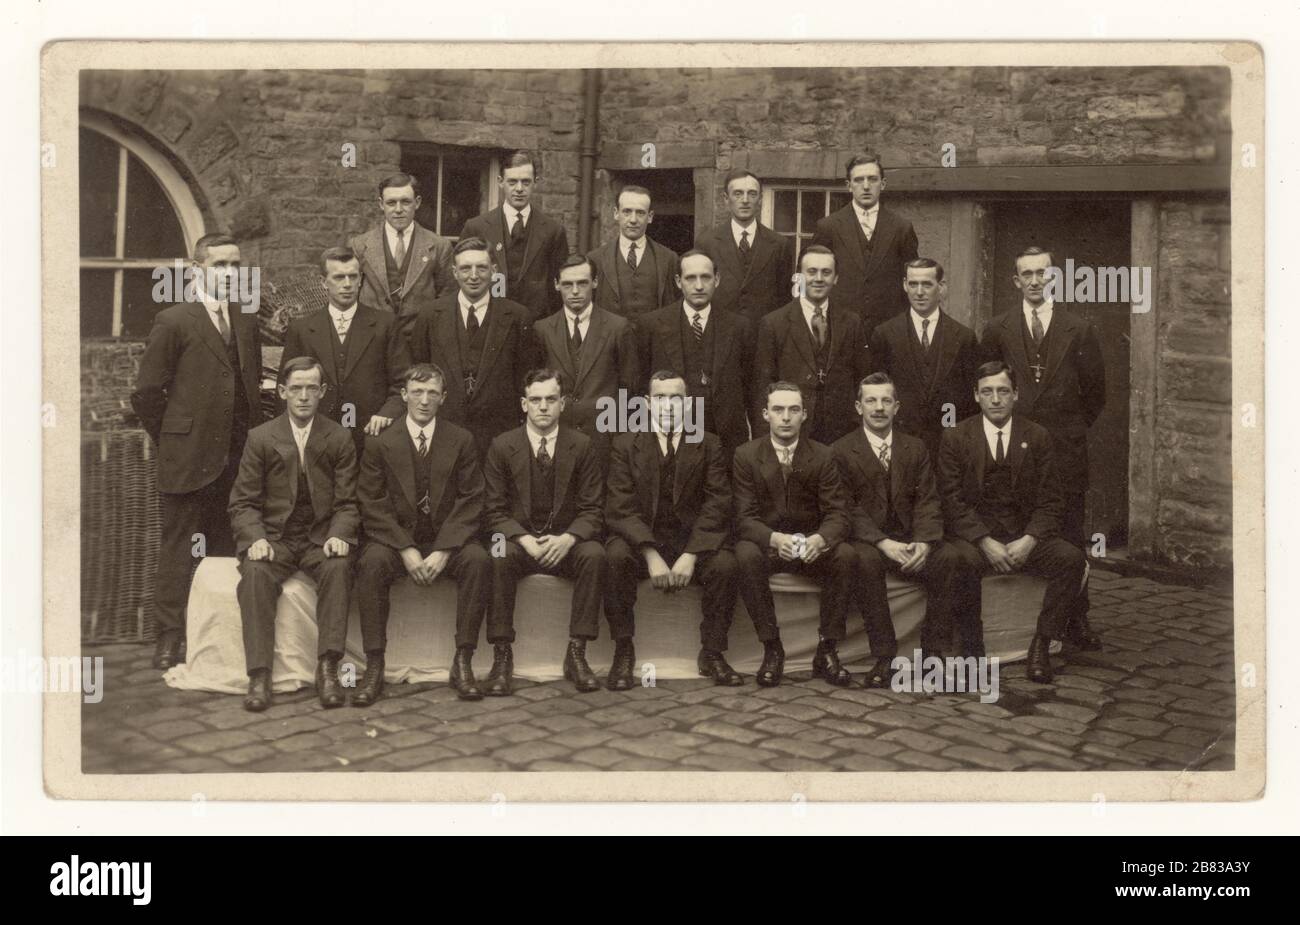 Originalpostkarte aus dem frühen 20. Jahrhundert mit einer Gruppe von Mitarbeitern in der Mühle, die elegante Anzüge tragen, posieren für ein Gruppenfoto draußen, Perseverance Mill, (Albion Mill) Padiham, Burnley, Lancashire, England, Großbritannien 1919 Stockfoto